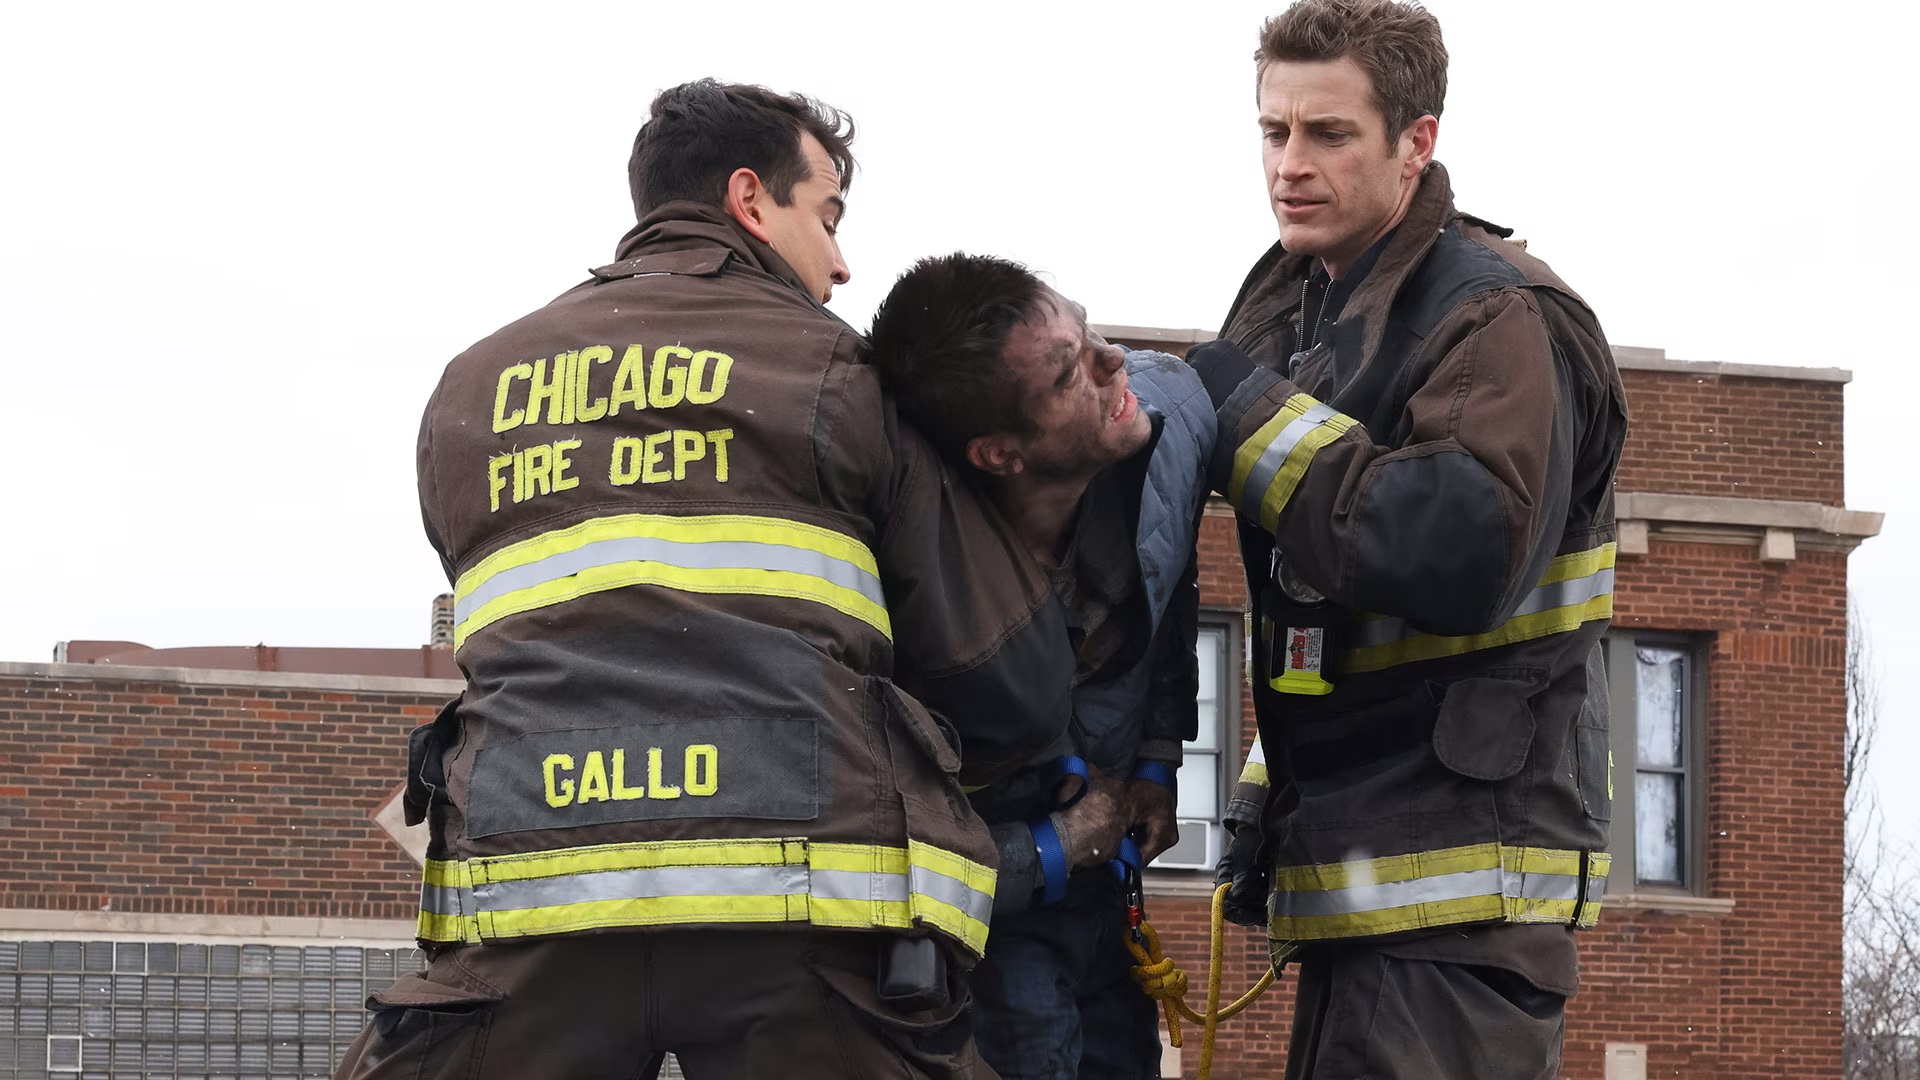 SerieTivu: Chicago Fire 11 settimo appuntamento. Tornano i pompieri e i paramedici del Chicago Fire Department, in prima tv free su Italia1